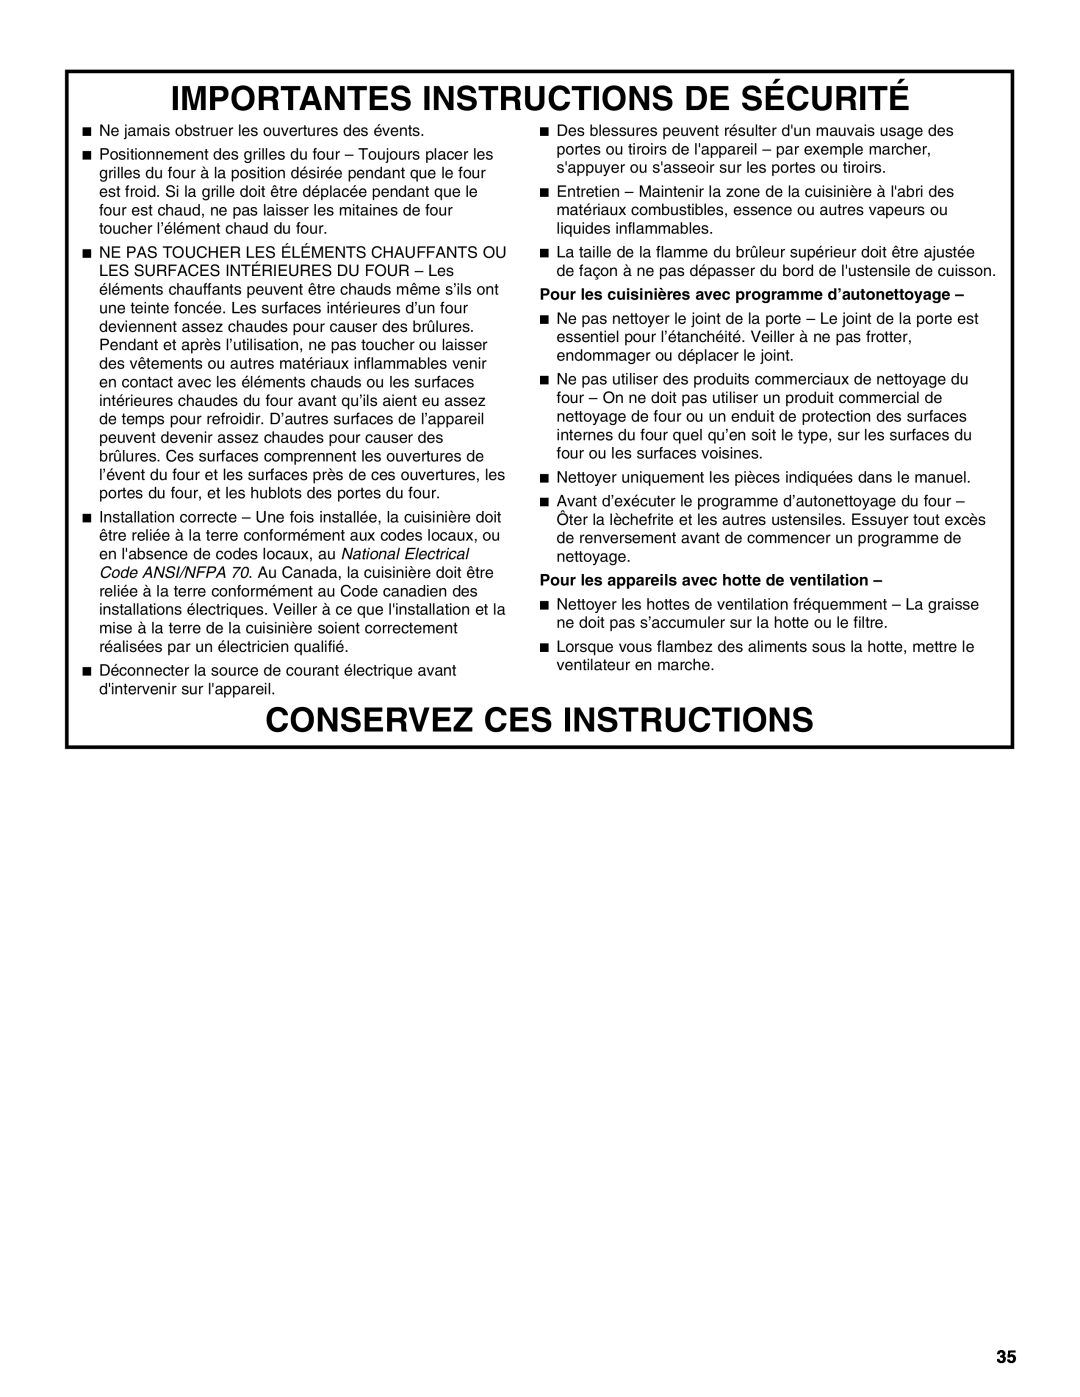 Jenn-Air JDS9865 manual Importantes Instructions De Sécurité, Conservez Ces Instructions 